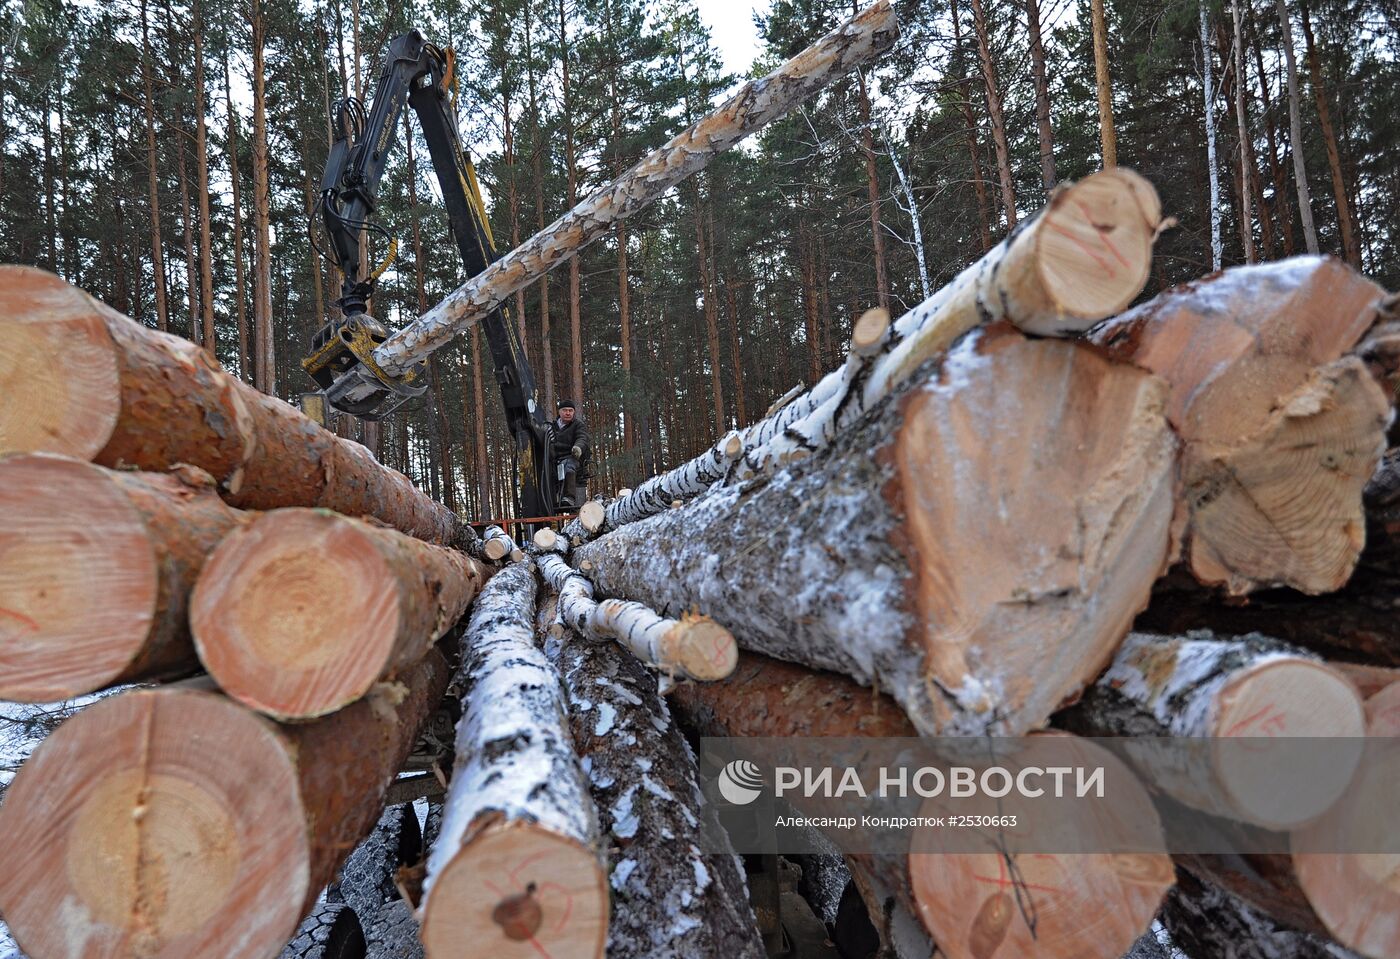 Предприятие по заготовке и переработке древесины "Кыштымский лес" в Челябинской области